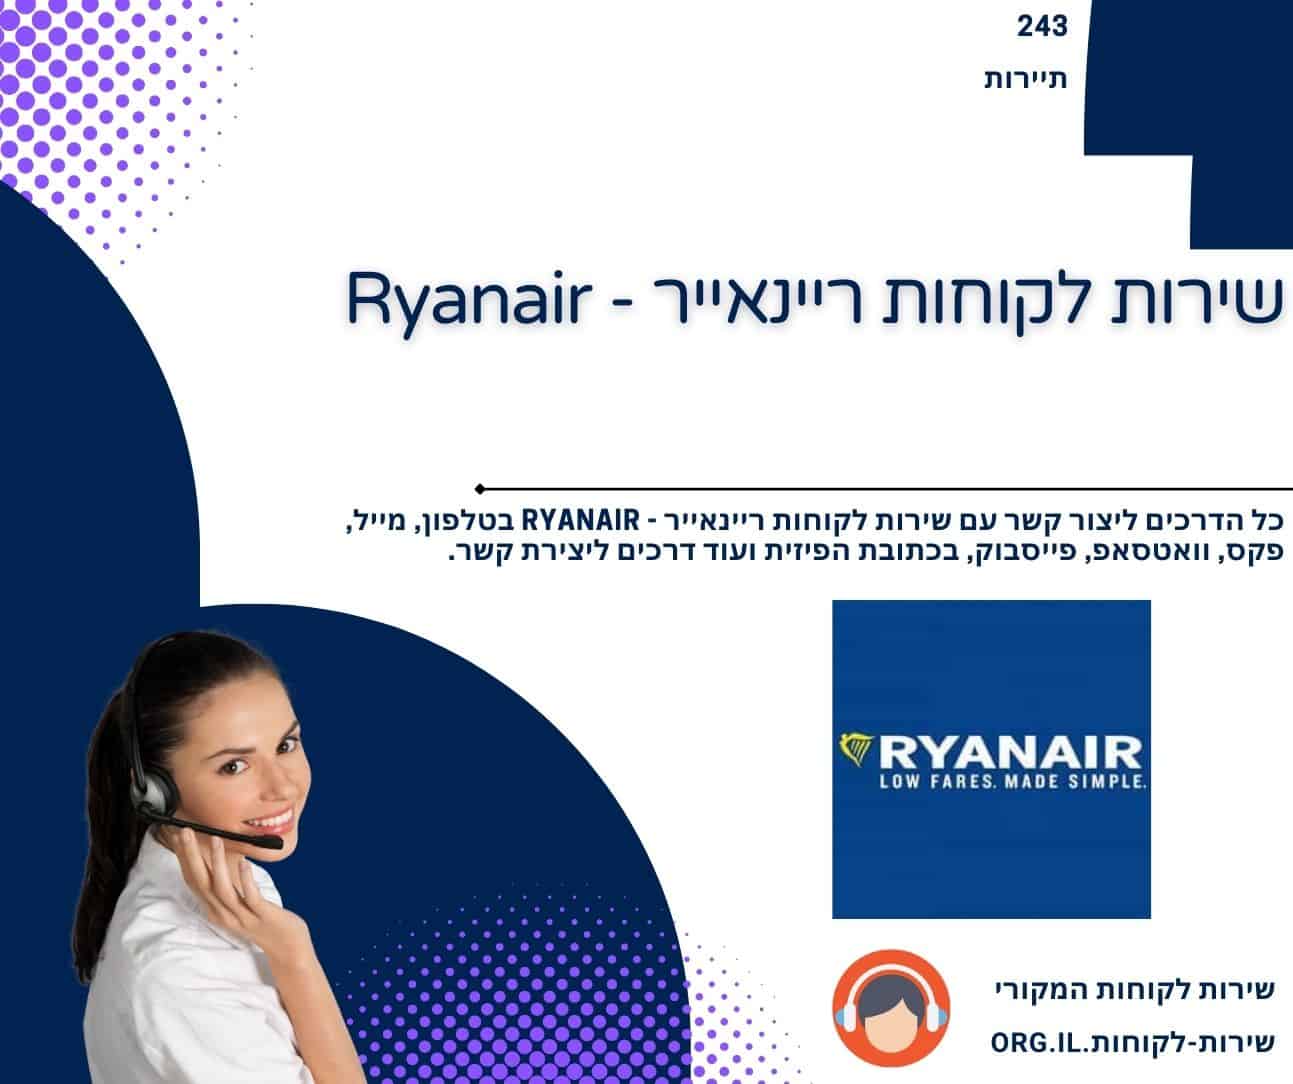 שירות לקוחות ריינאייר - Ryanair